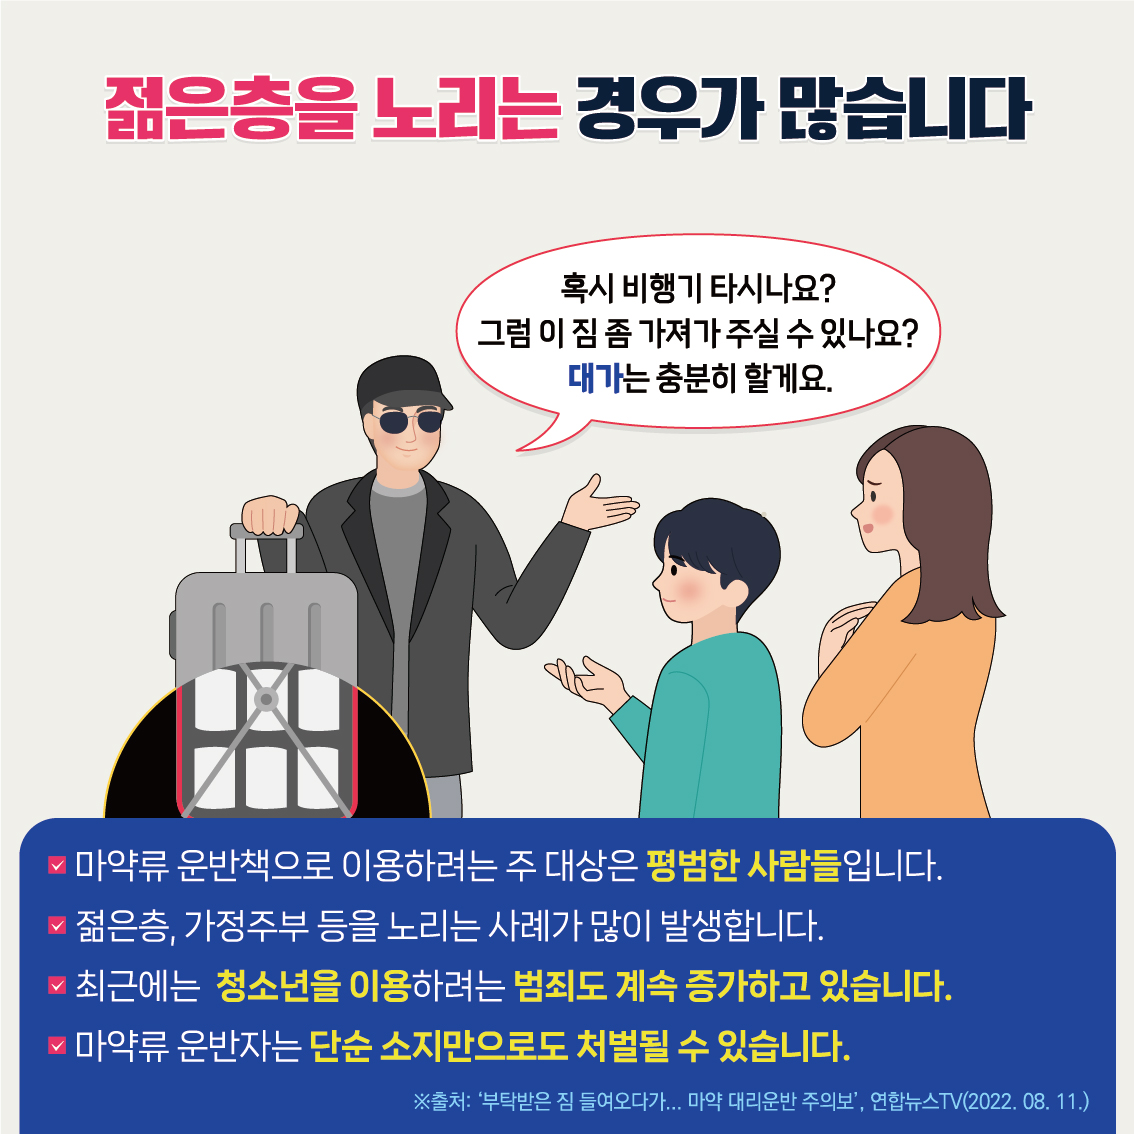 12월1주_마약류 예방 카드뉴스-4호1 (3)